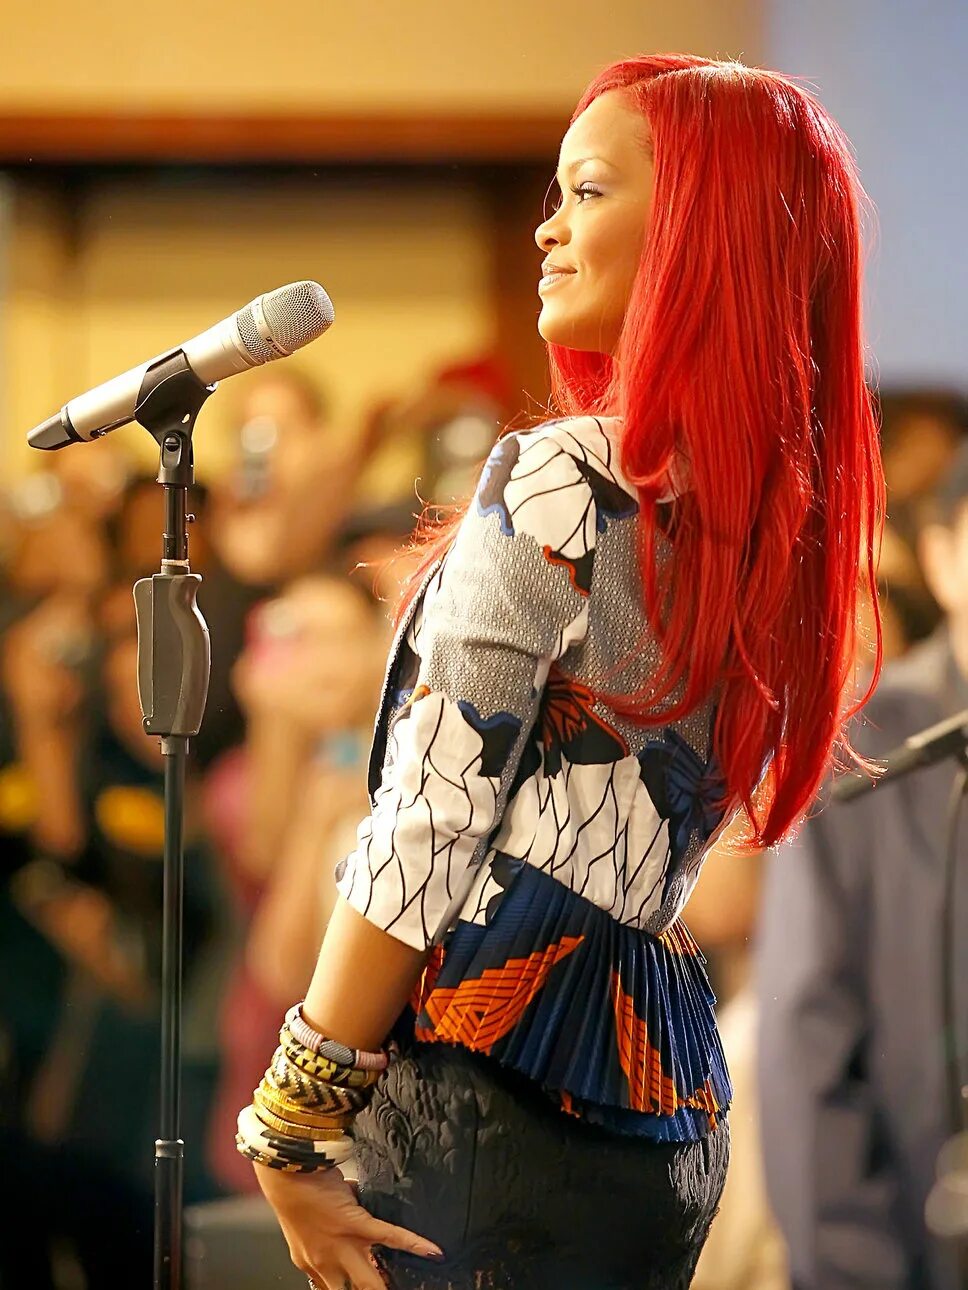 Поющий волос. Rihanna Red hair. Рианна певица с красными волосами. Рианна рыжая. Рианна в 2000 с красными волосами.